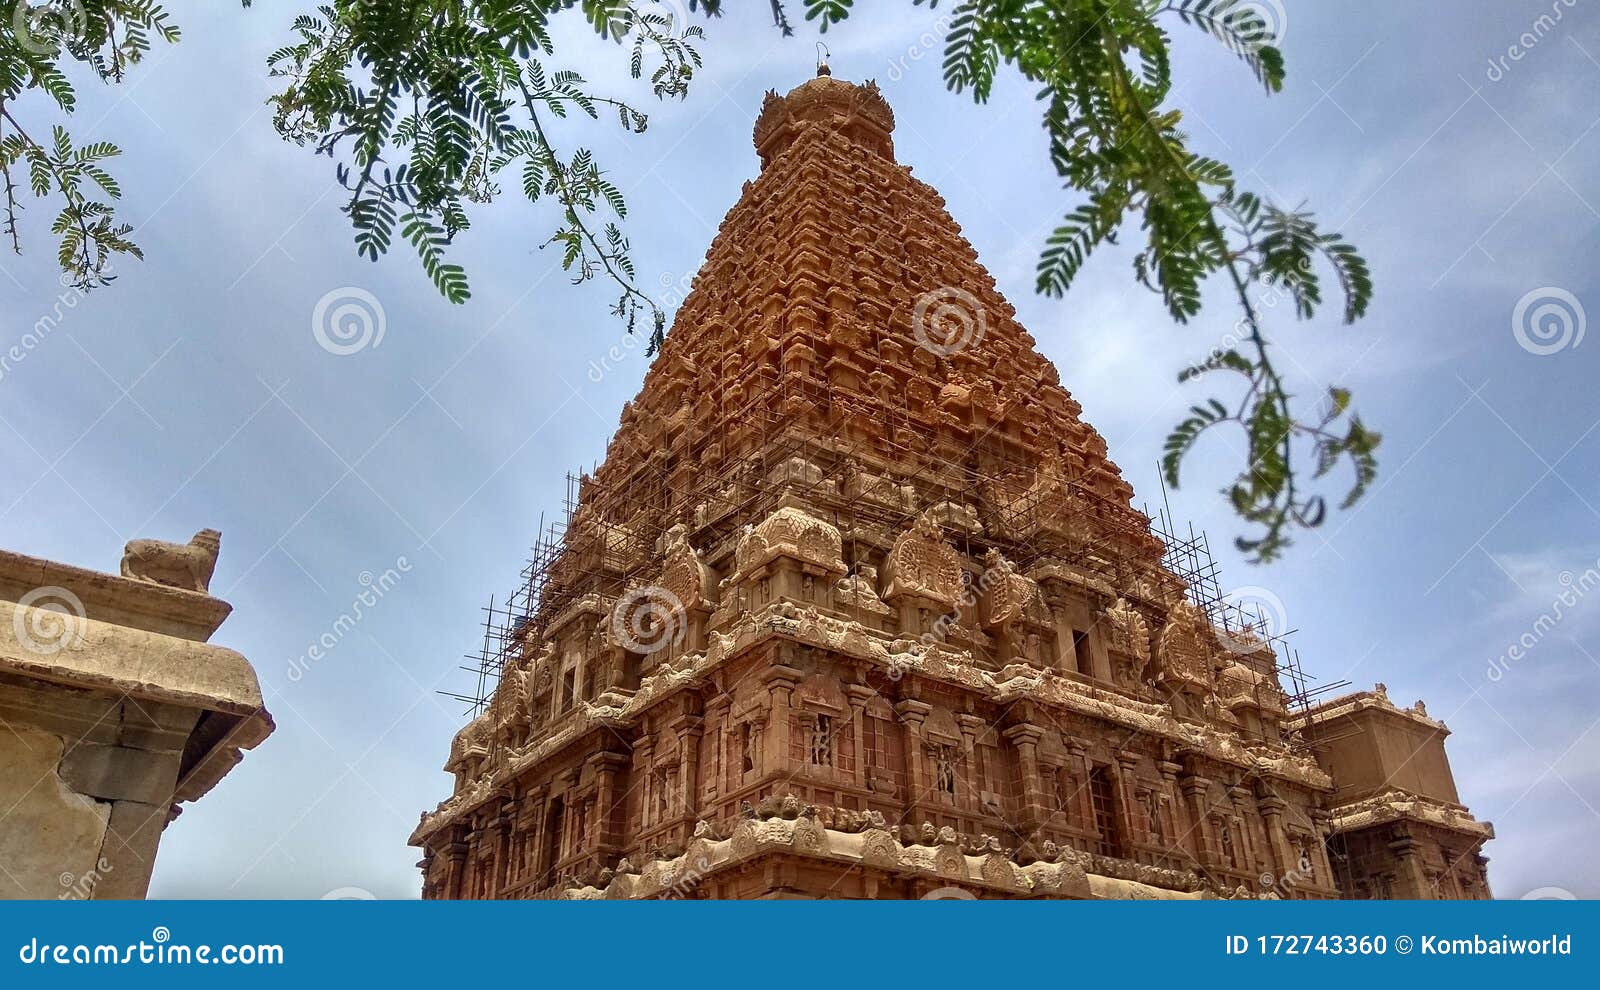 brihadishvara temple - thajavur periya kovil by raja raja cholan